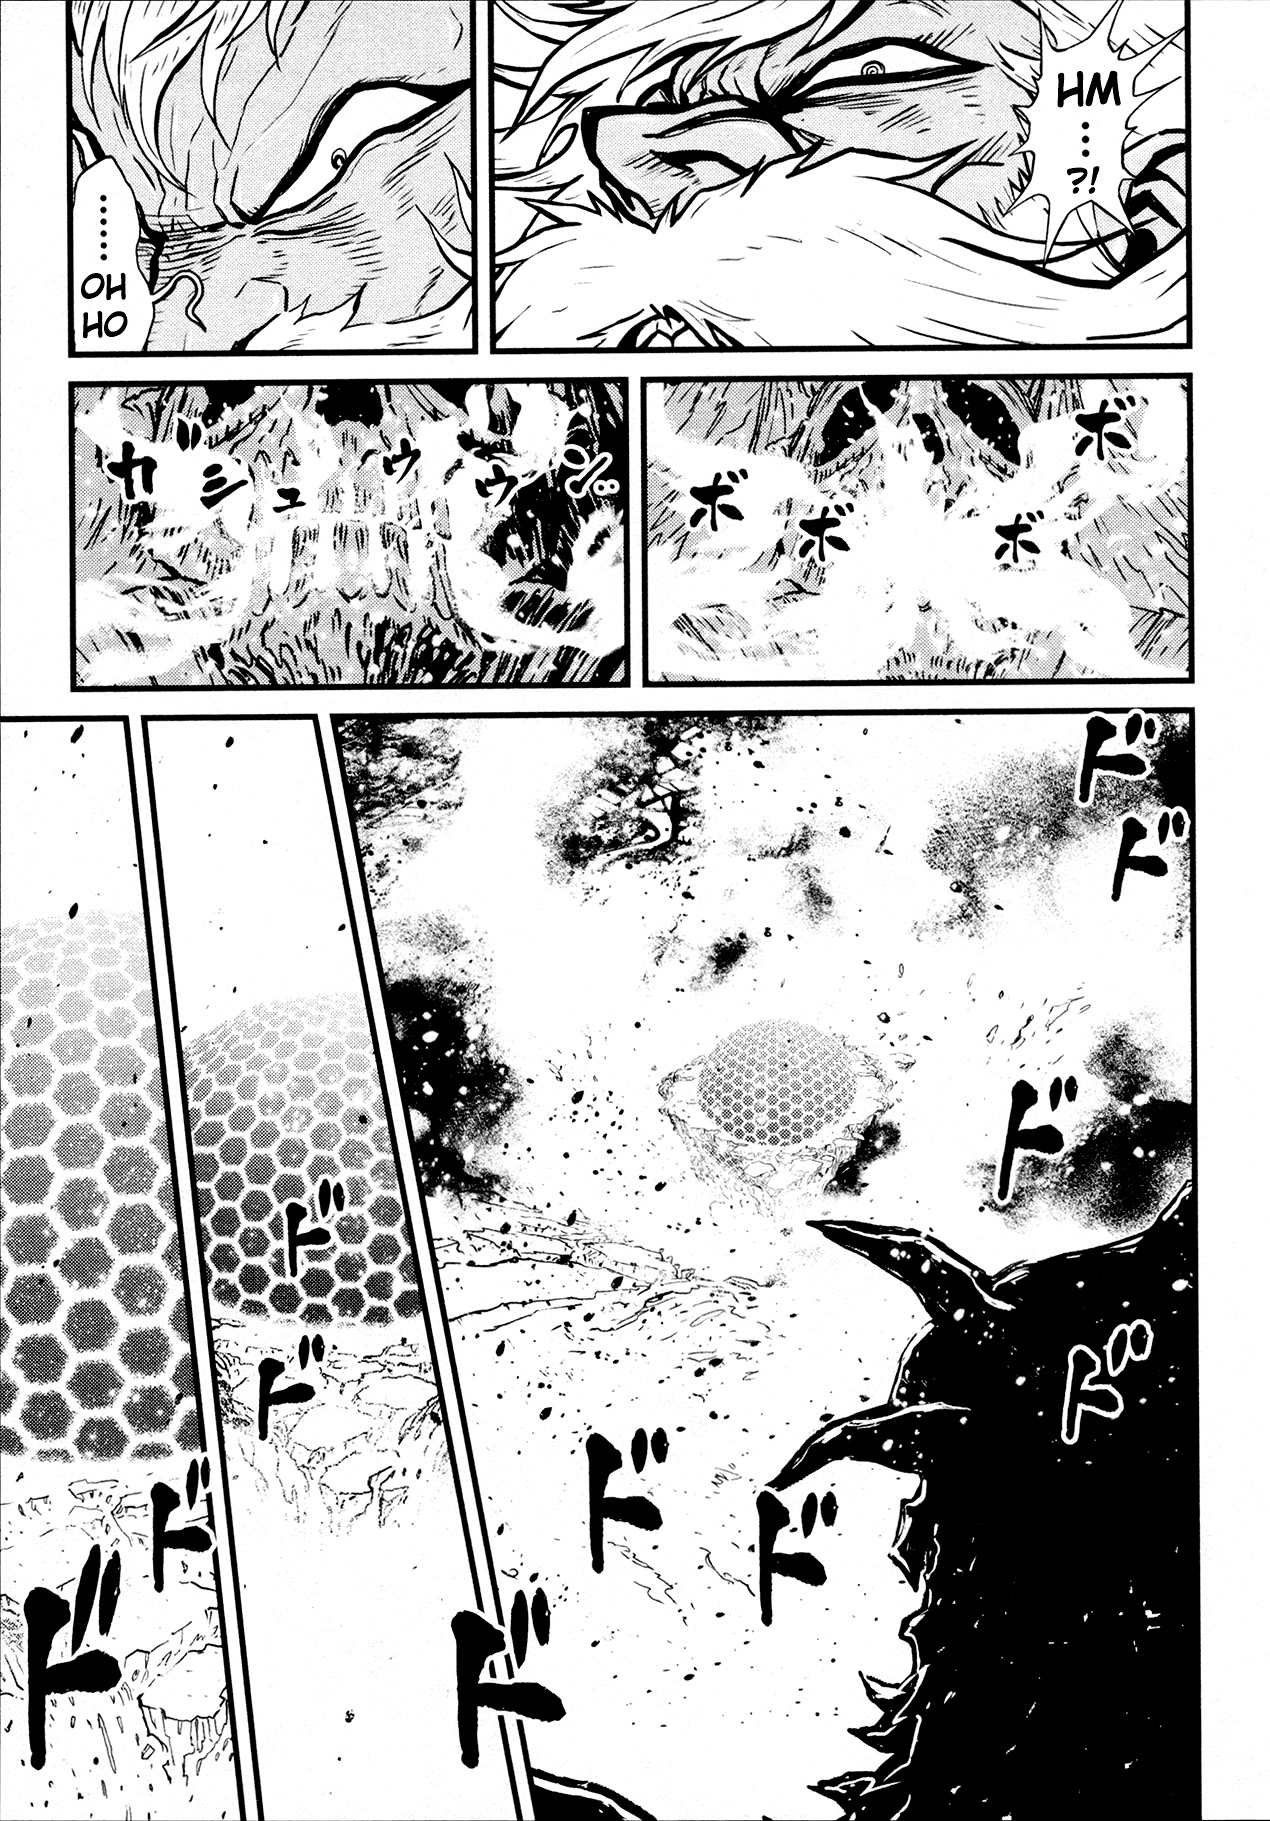 Shin Mazinger Zero Vol. 7 Ch. 31 Take back Hope for the Future!